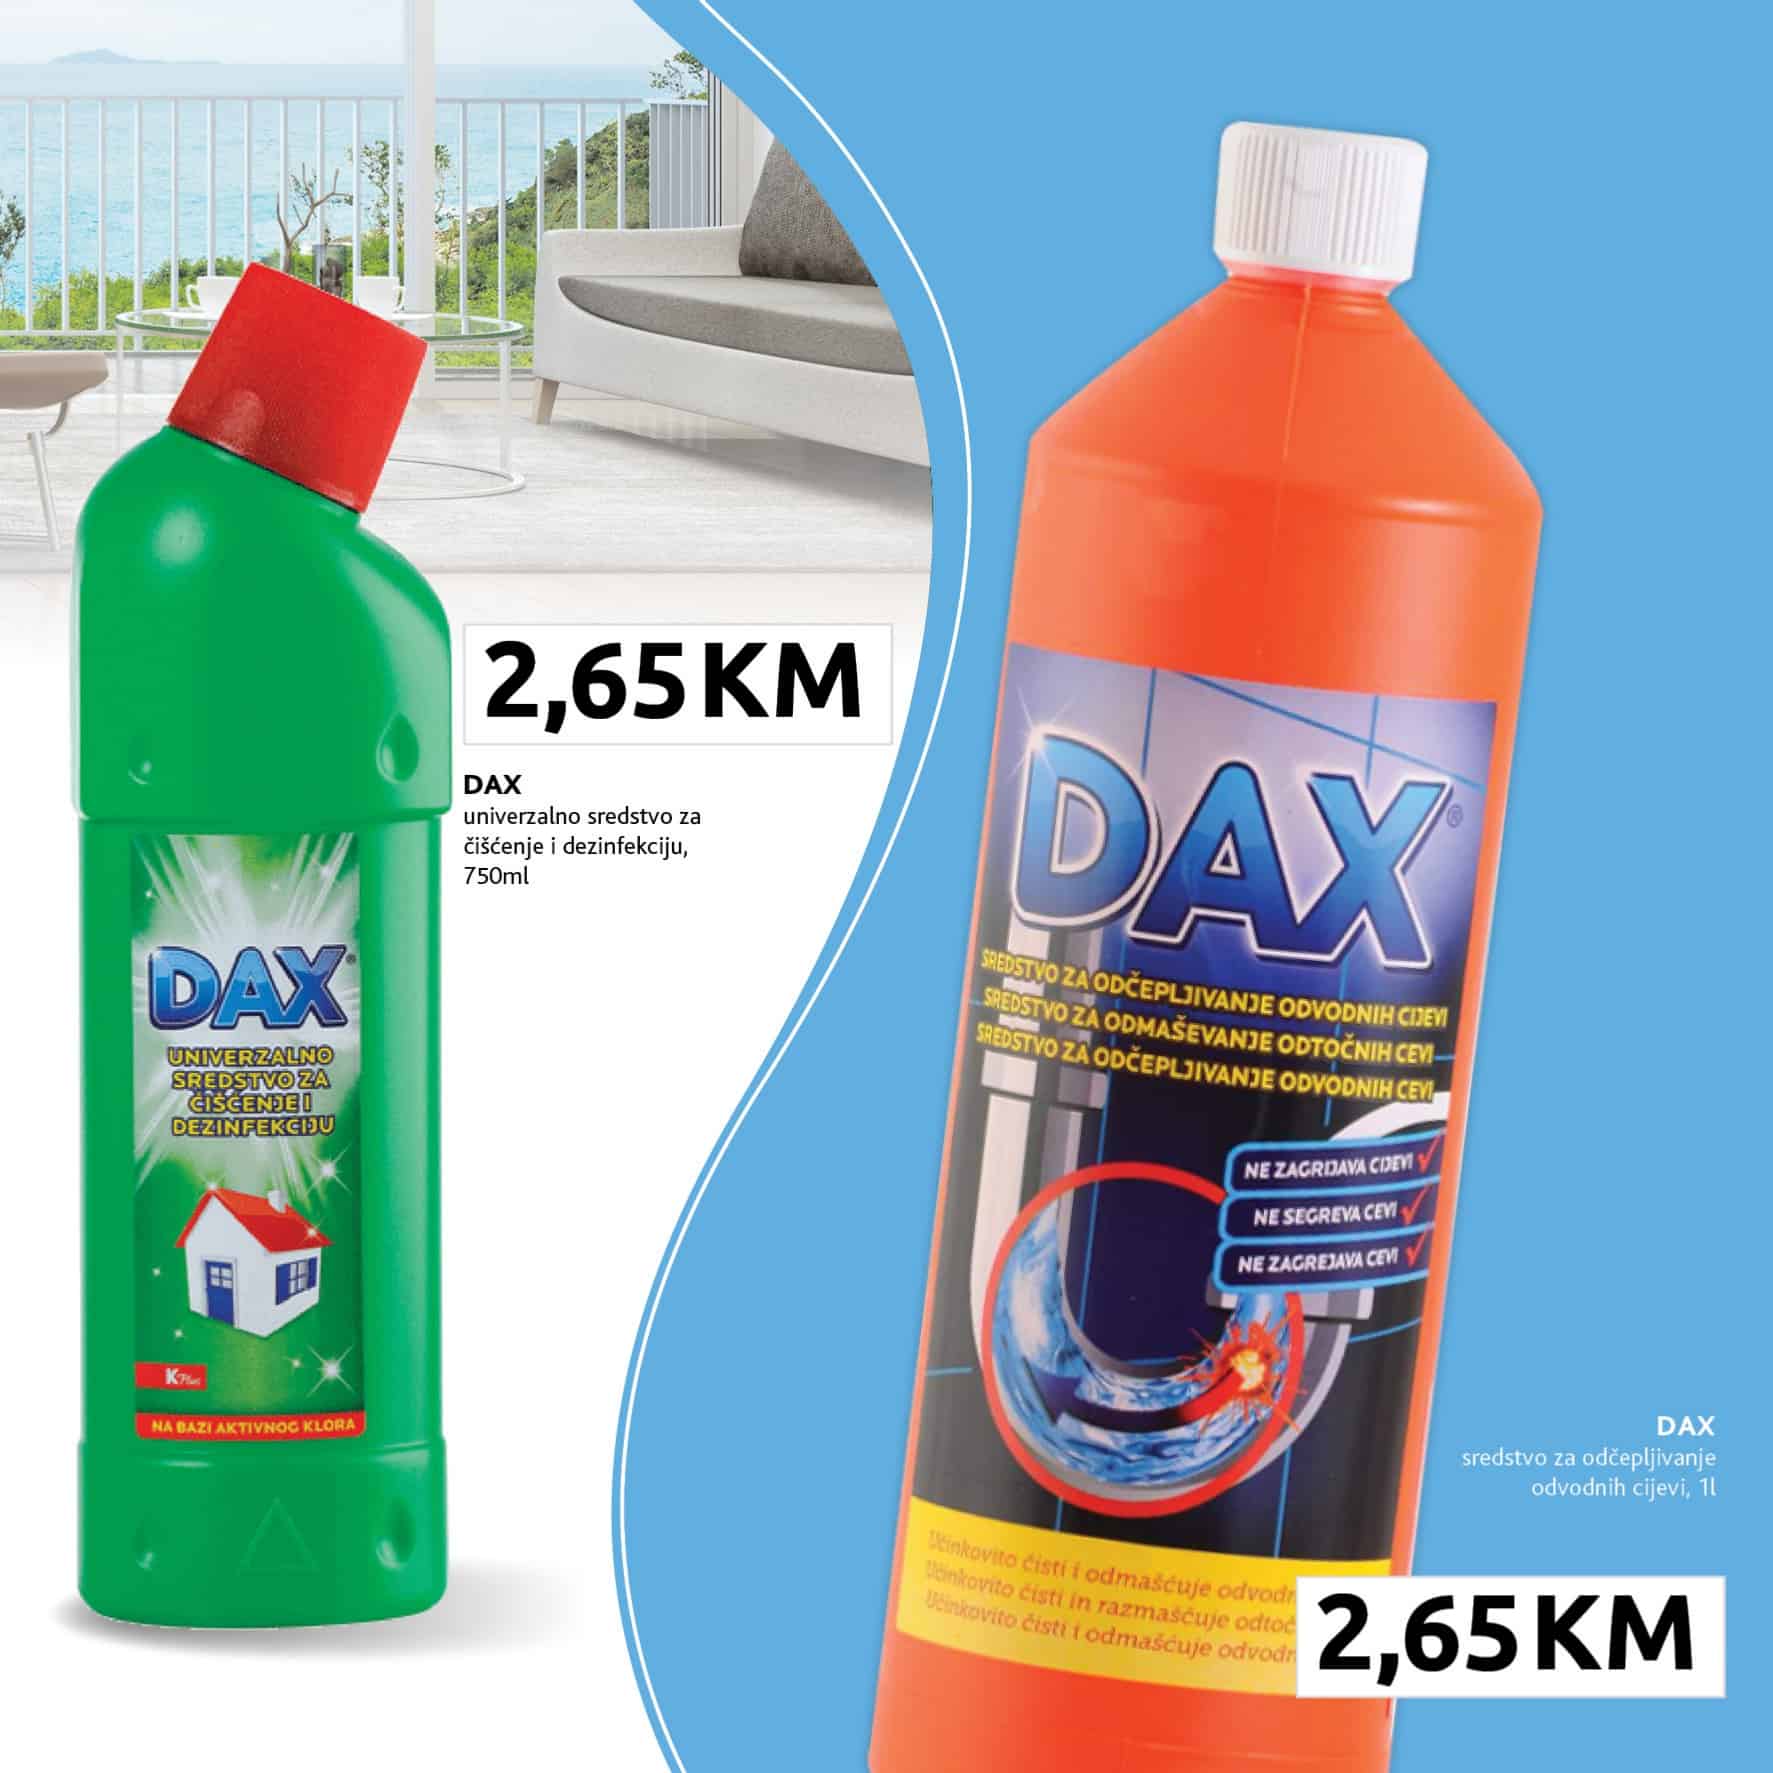 Konzum katalog donosi nam DAX proizvode po ackijskim sniženim cijenama!